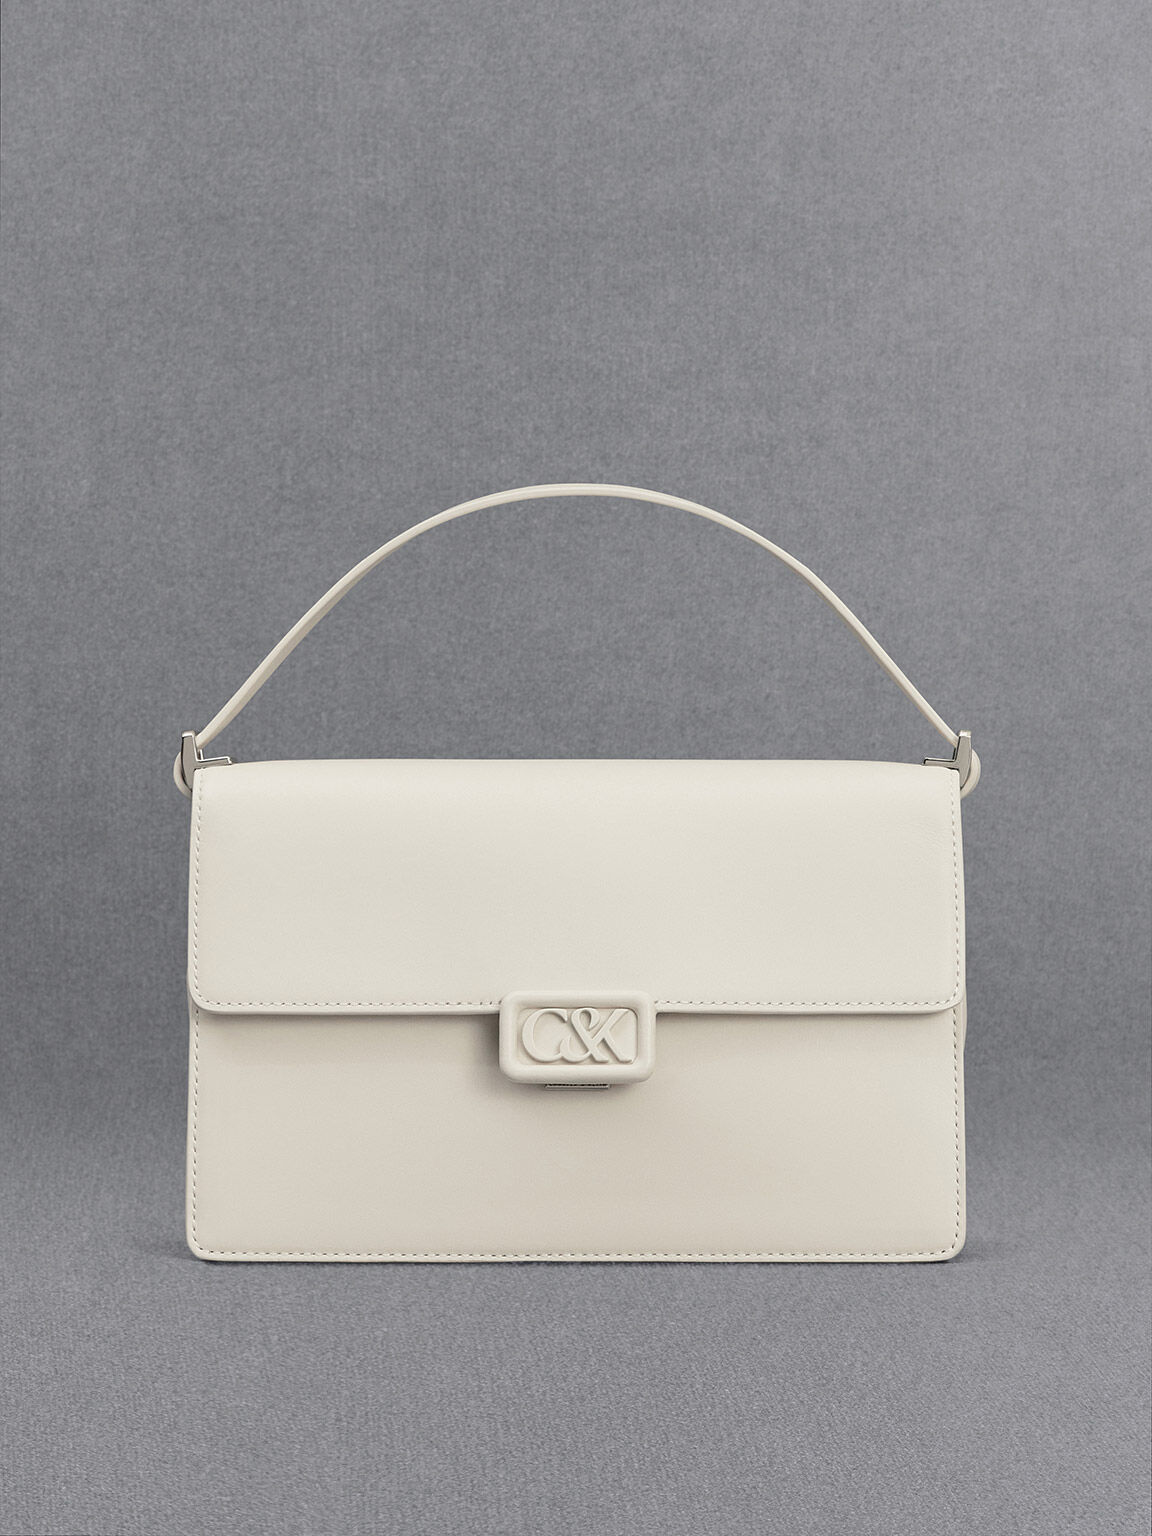 White Handbags | White Designer Bags | House of Fraser